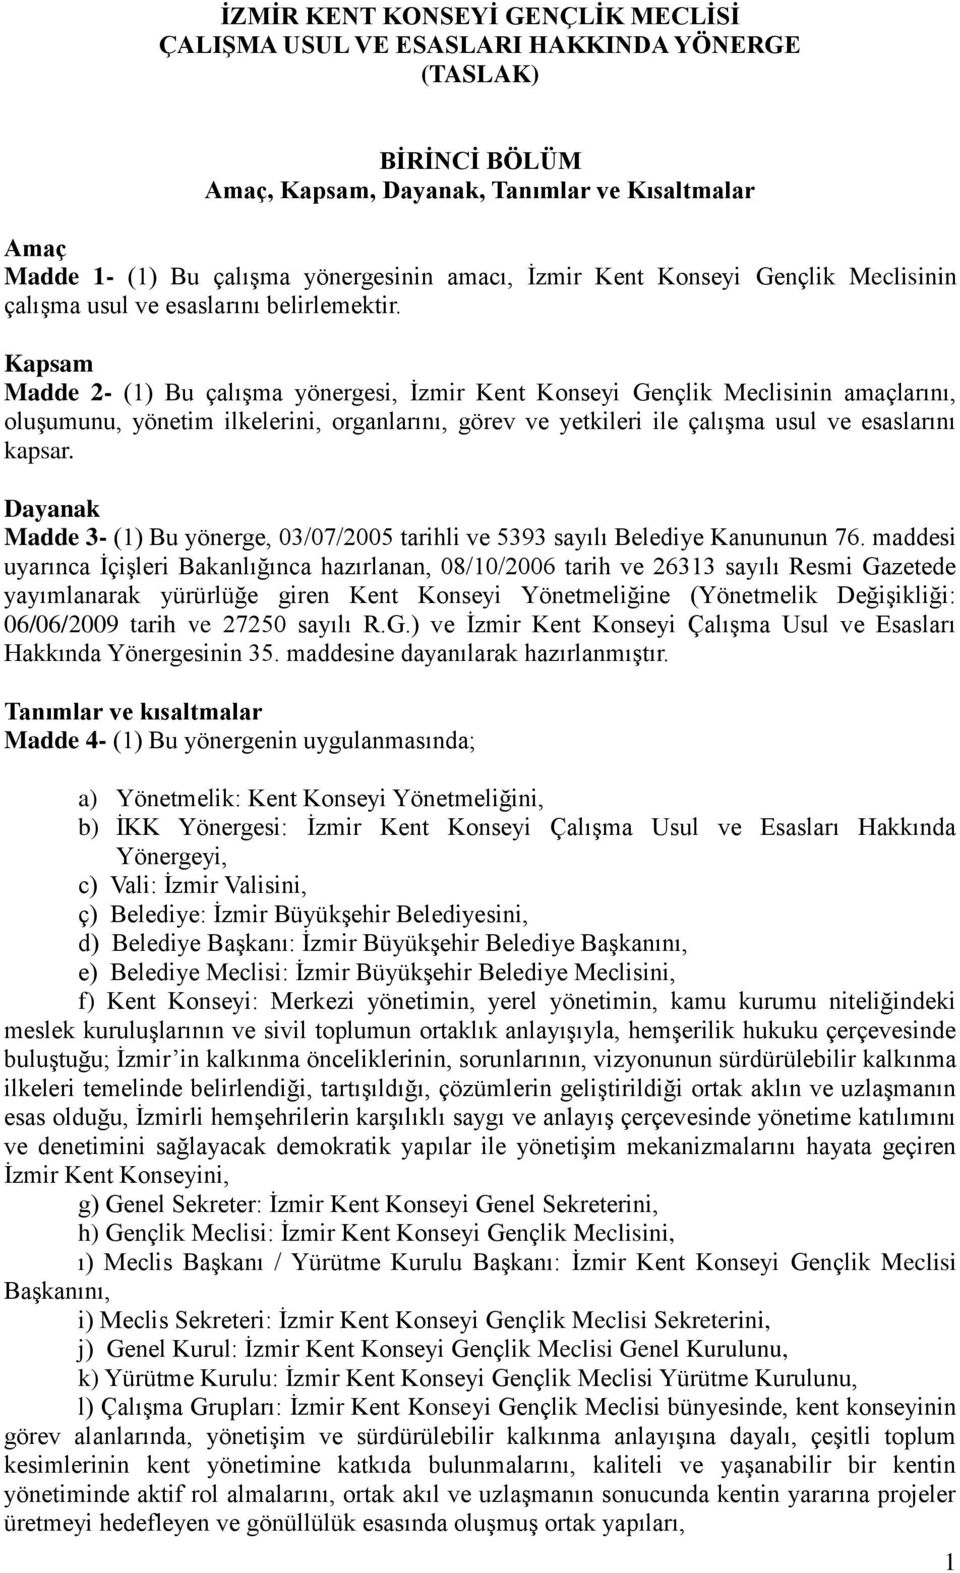 Kapsam Madde 2- (1) Bu çalışma yönergesi, İzmir Kent Konseyi Gençlik Meclisinin amaçlarını, oluşumunu, yönetim ilkelerini, organlarını, görev ve yetkileri ile çalışma usul ve esaslarını kapsar.